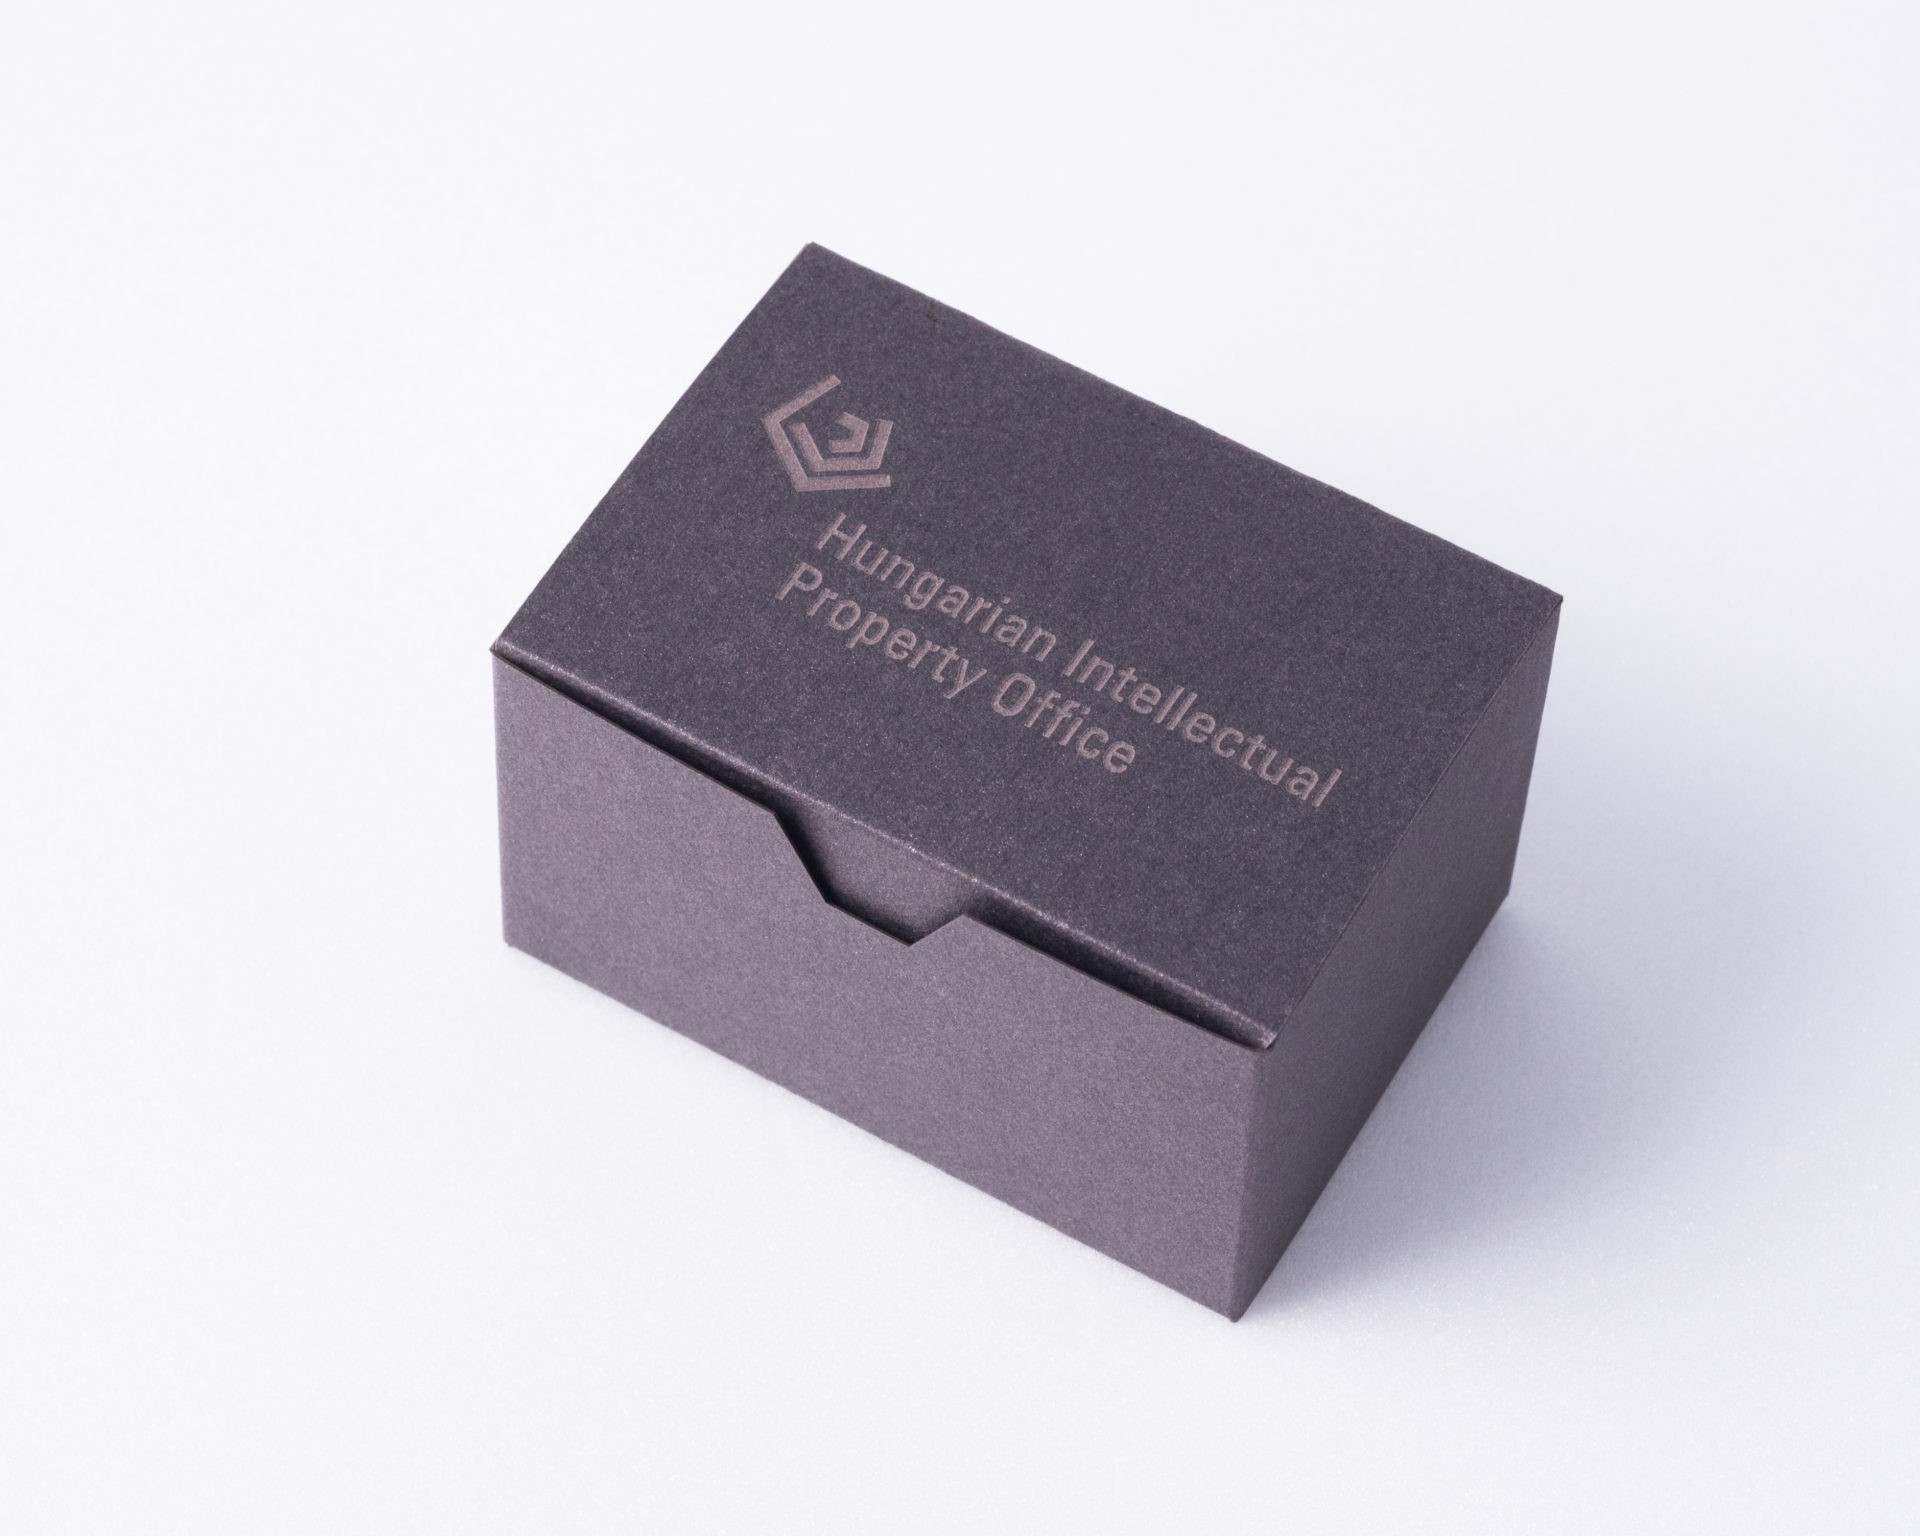 ARCHICON pen holder in custom logo box as business gift